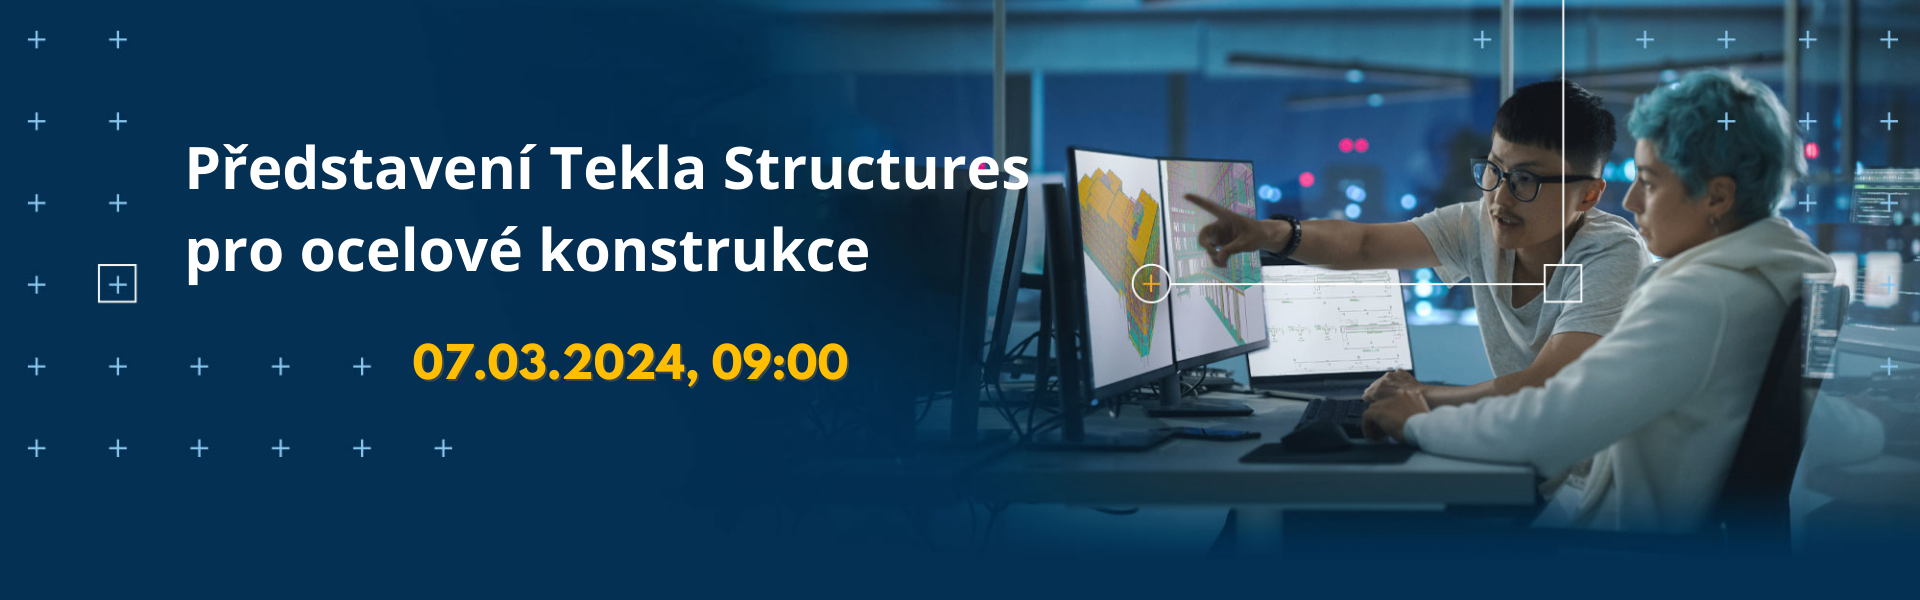 Představení Tekla Structures pro ocelové konstrukce (07.03.2024)